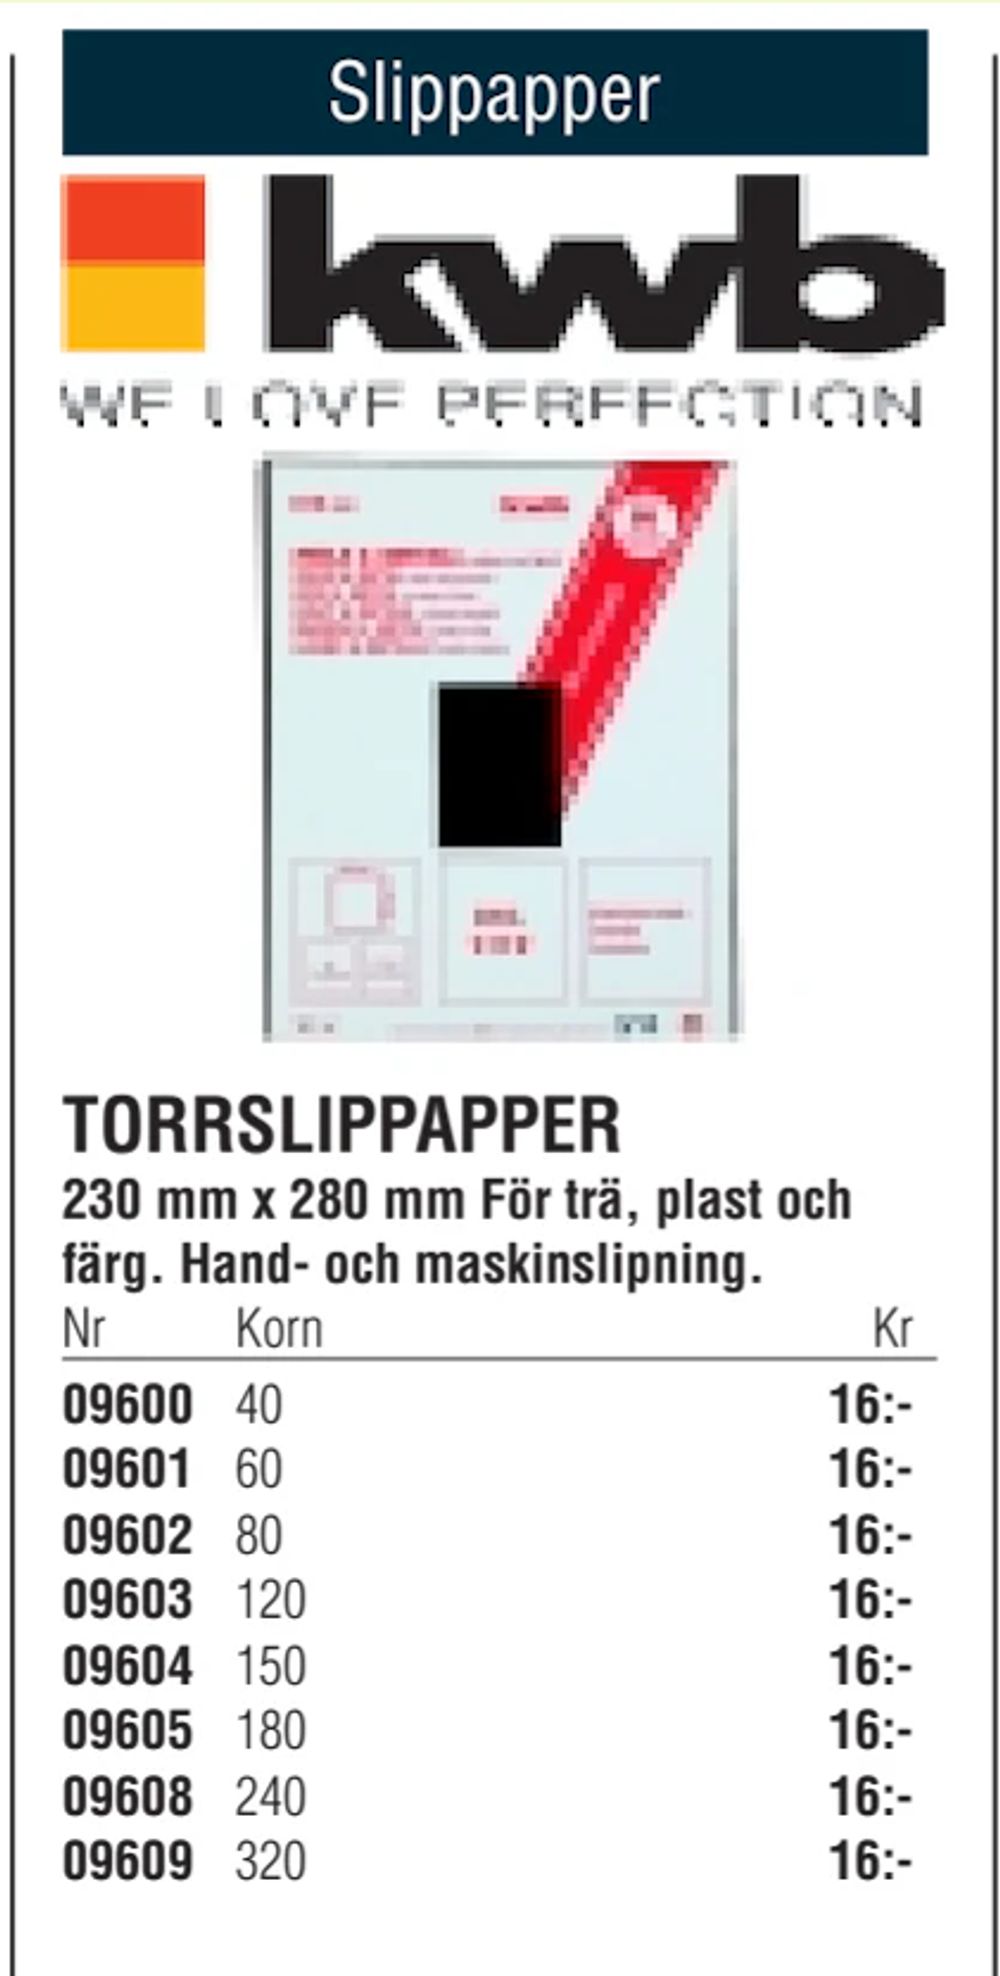 Erbjudanden på TORRSLIPPAPPER från Erlandsons Brygga för 16 kr